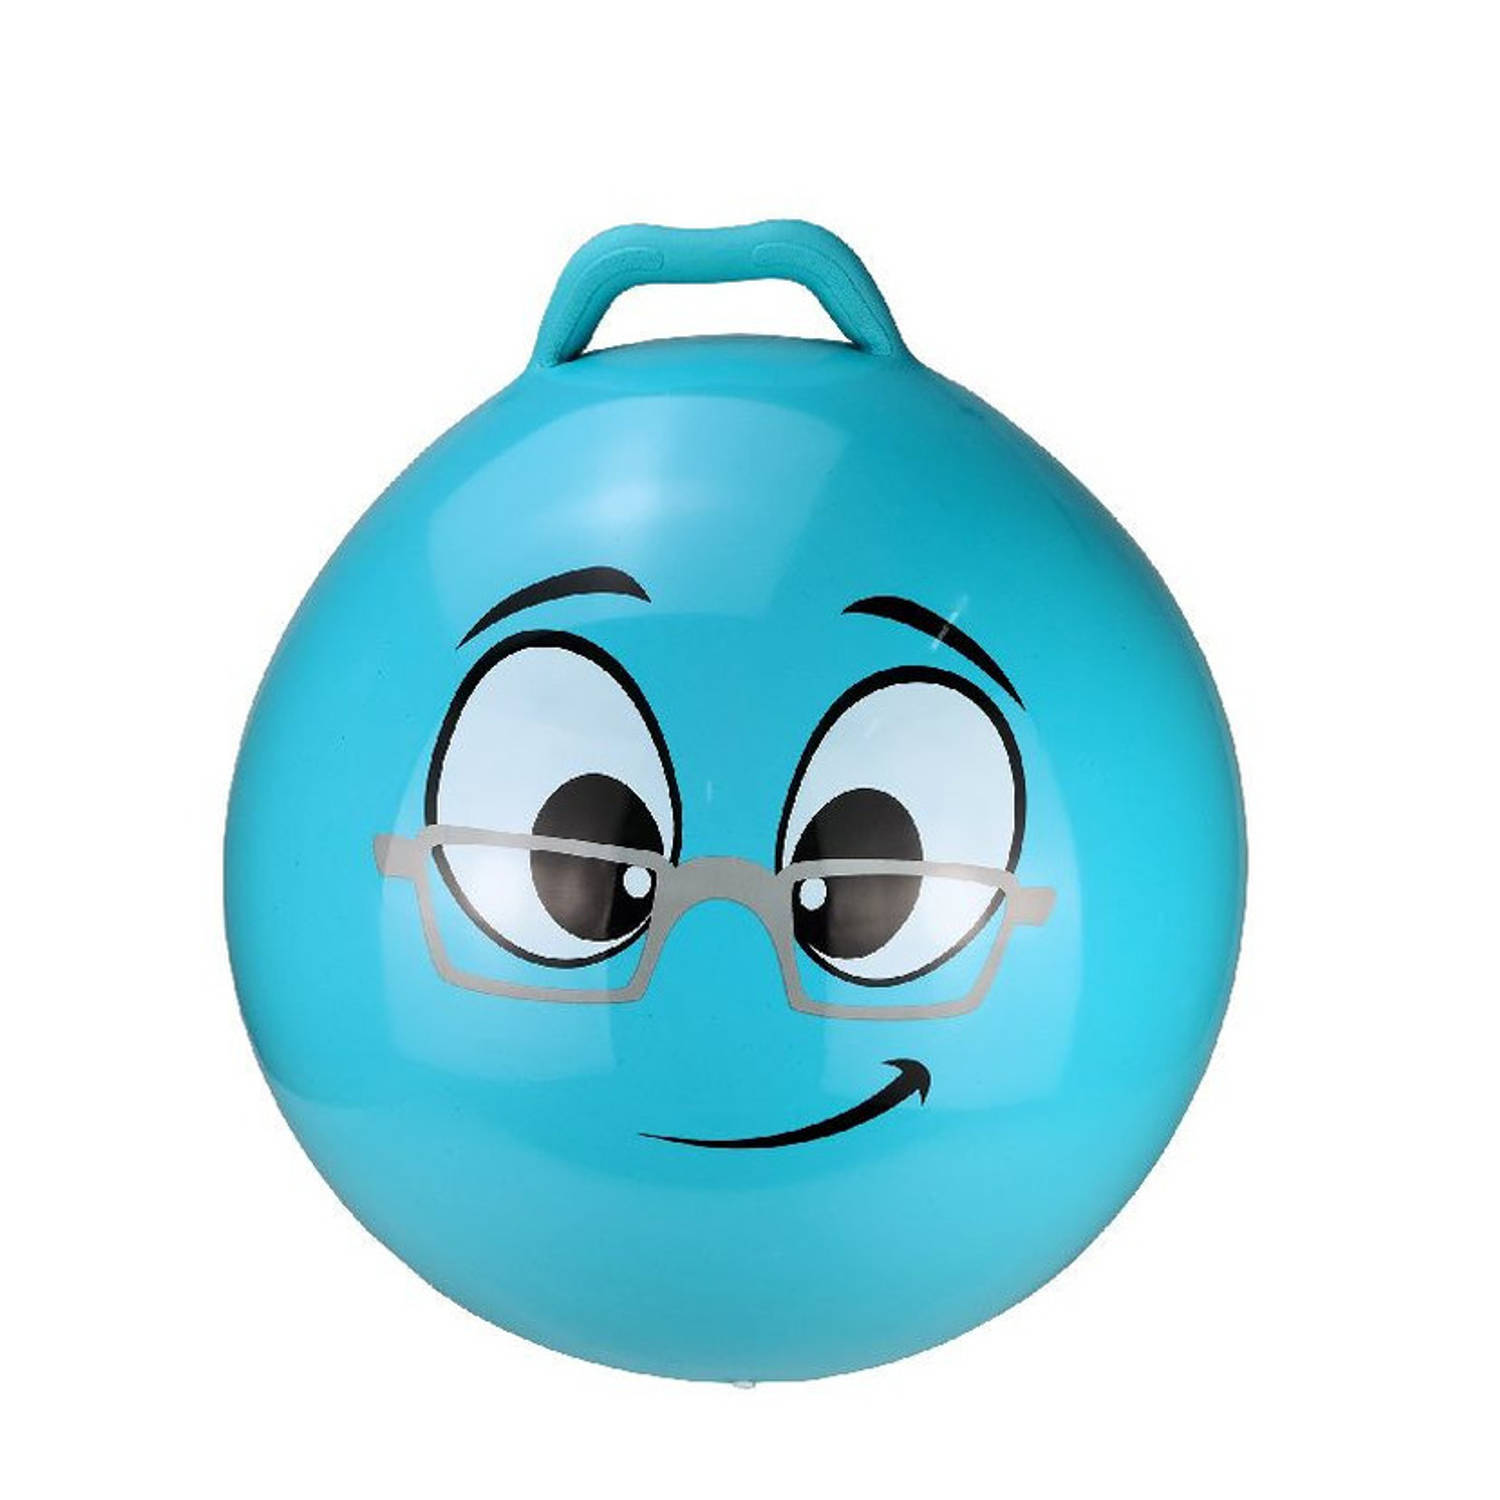 Skippybal Smiley Voor Kinderen Blauw 55 Cm Zomer Buiten Speelgoed